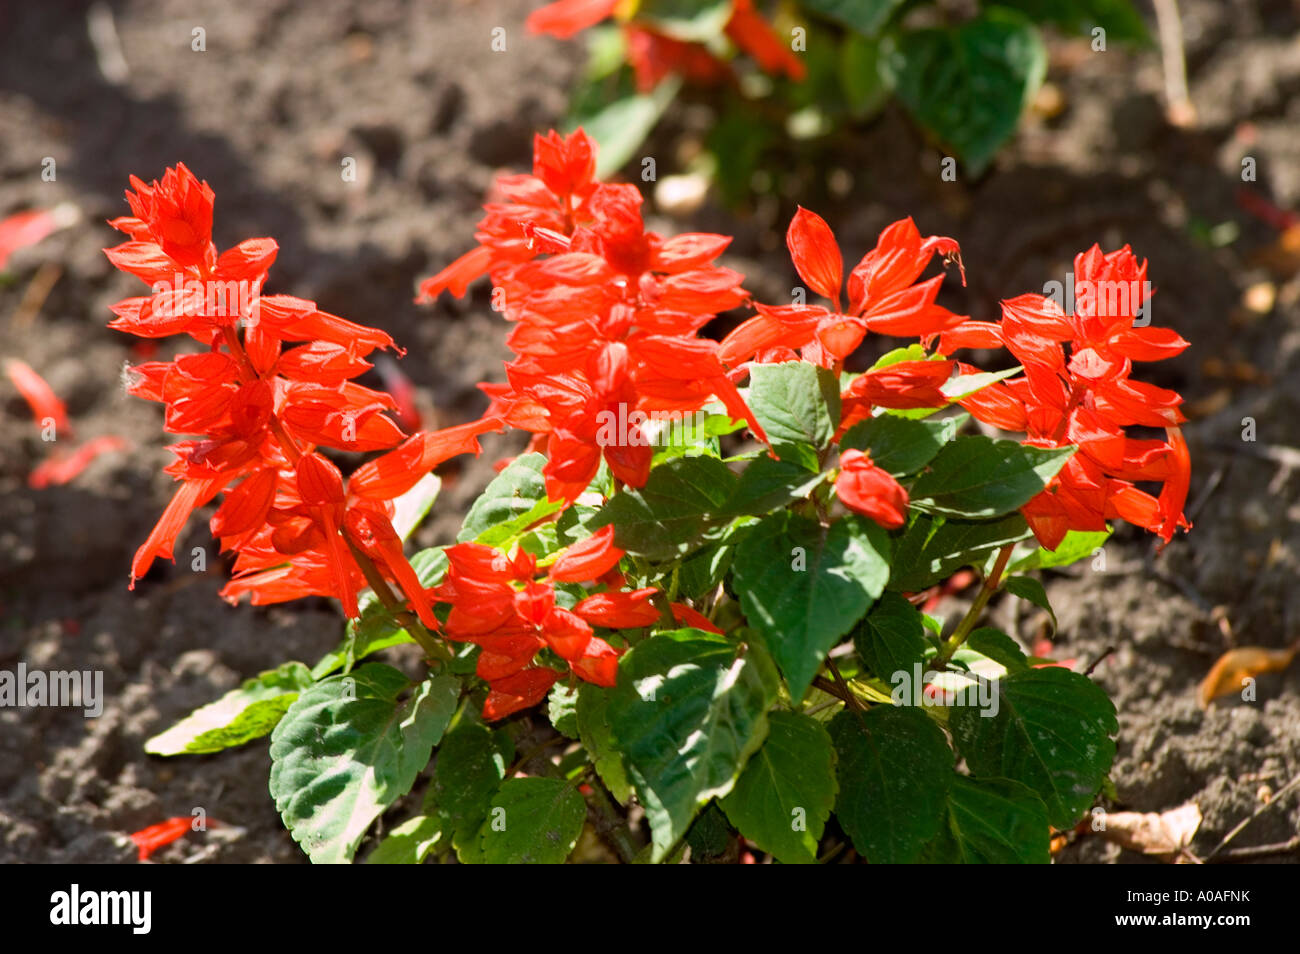 Red flowers of Salvia splendens Sello Brazil Stock Photo